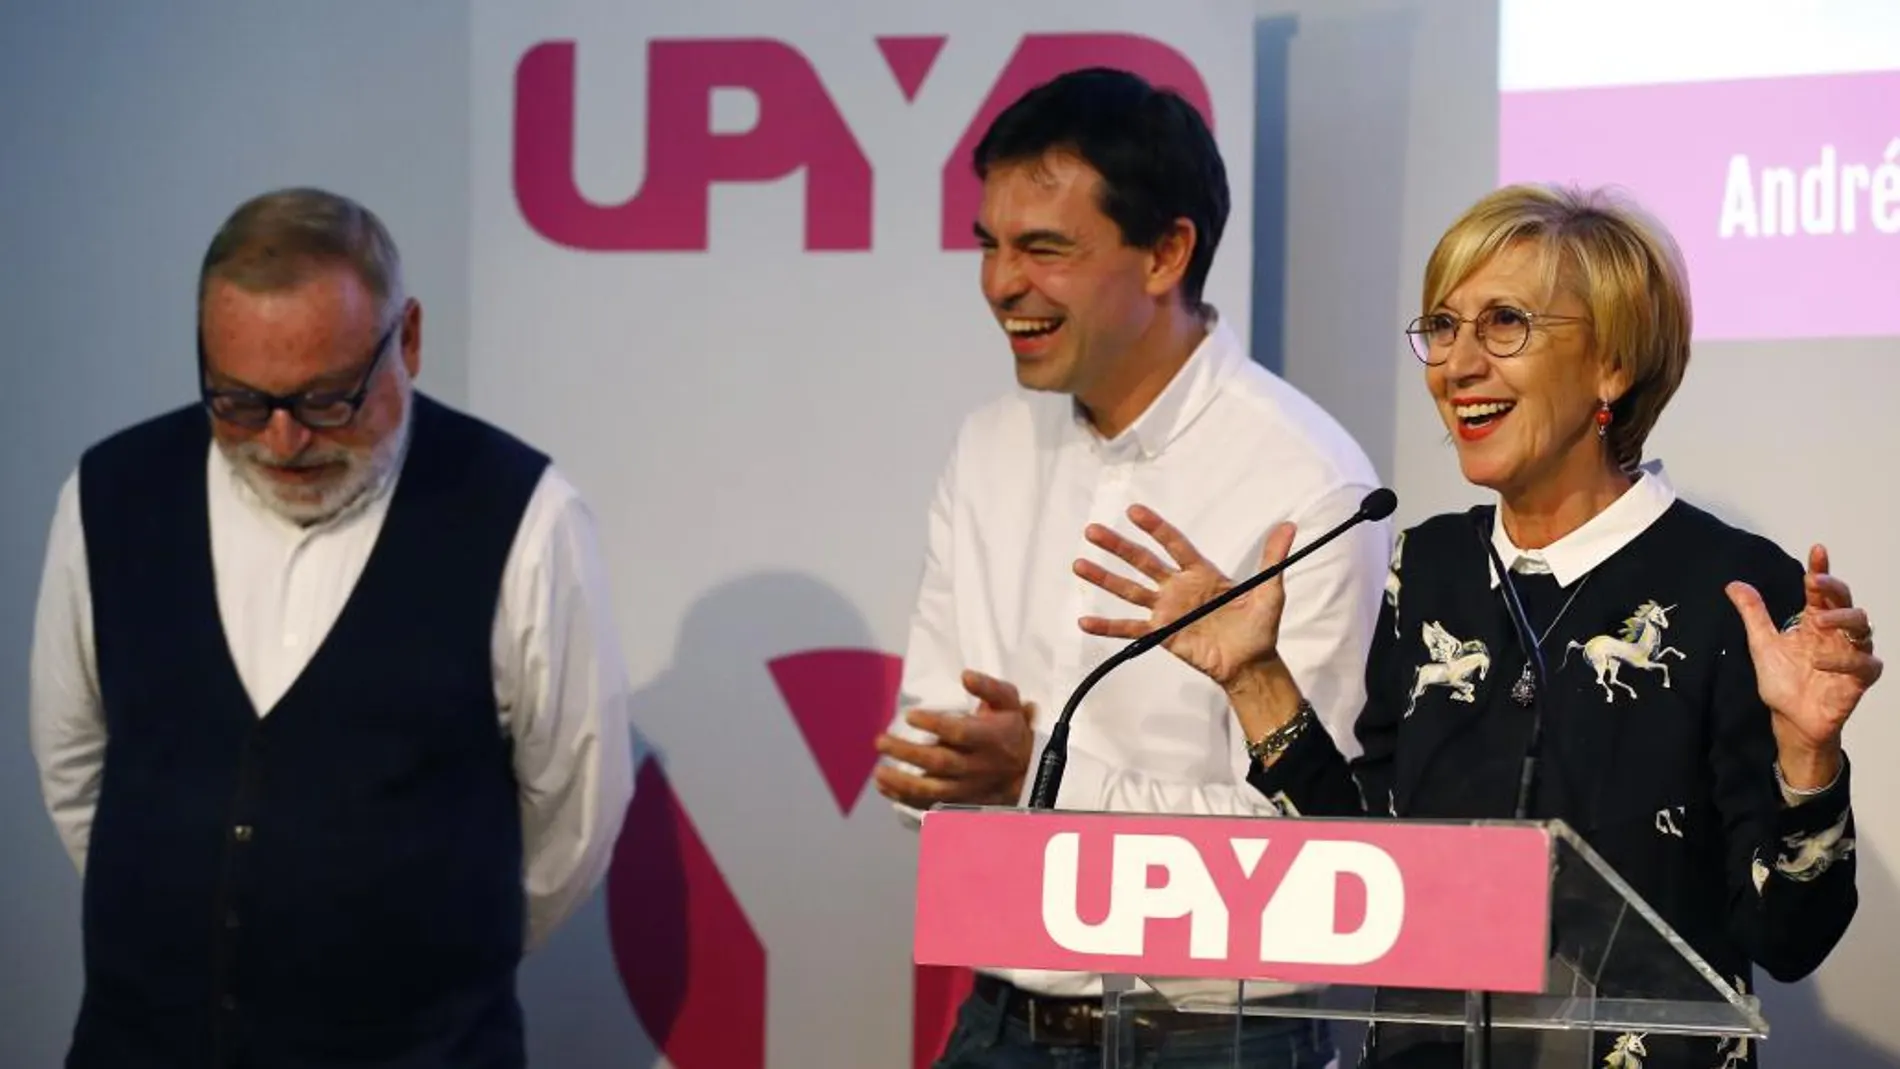 La diputada y exdirigente de UPyD Rosa Díez interviene en el mitin de cierre de campaña en Madrid junto al candidato a la Presidencia del Gobierno, Andrés Herzog, y Fernando Savater